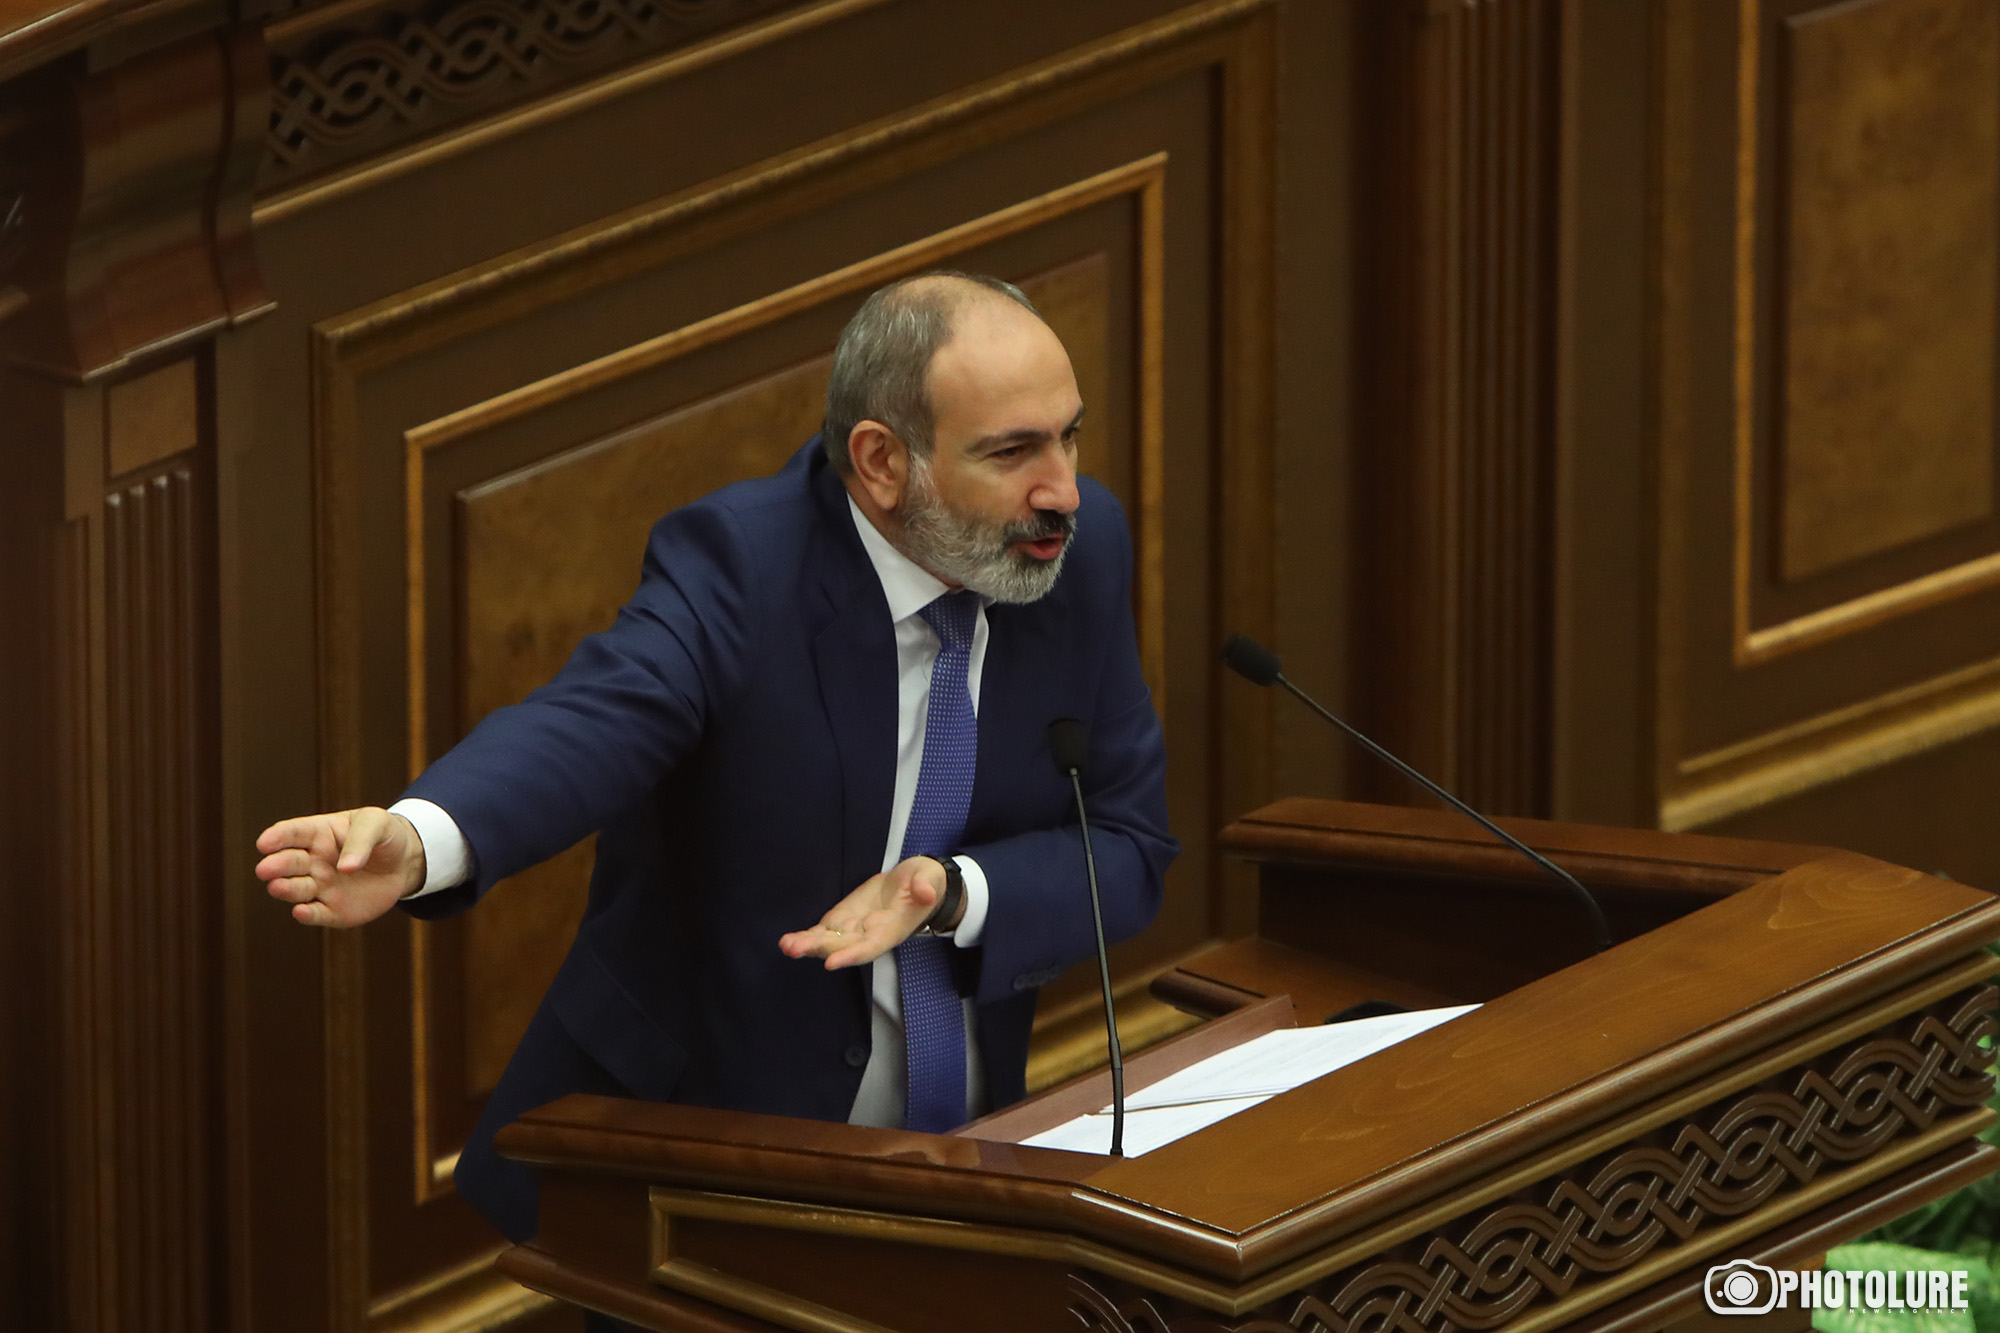 Pashinyan details plans for Karabakh peace talks in major speech